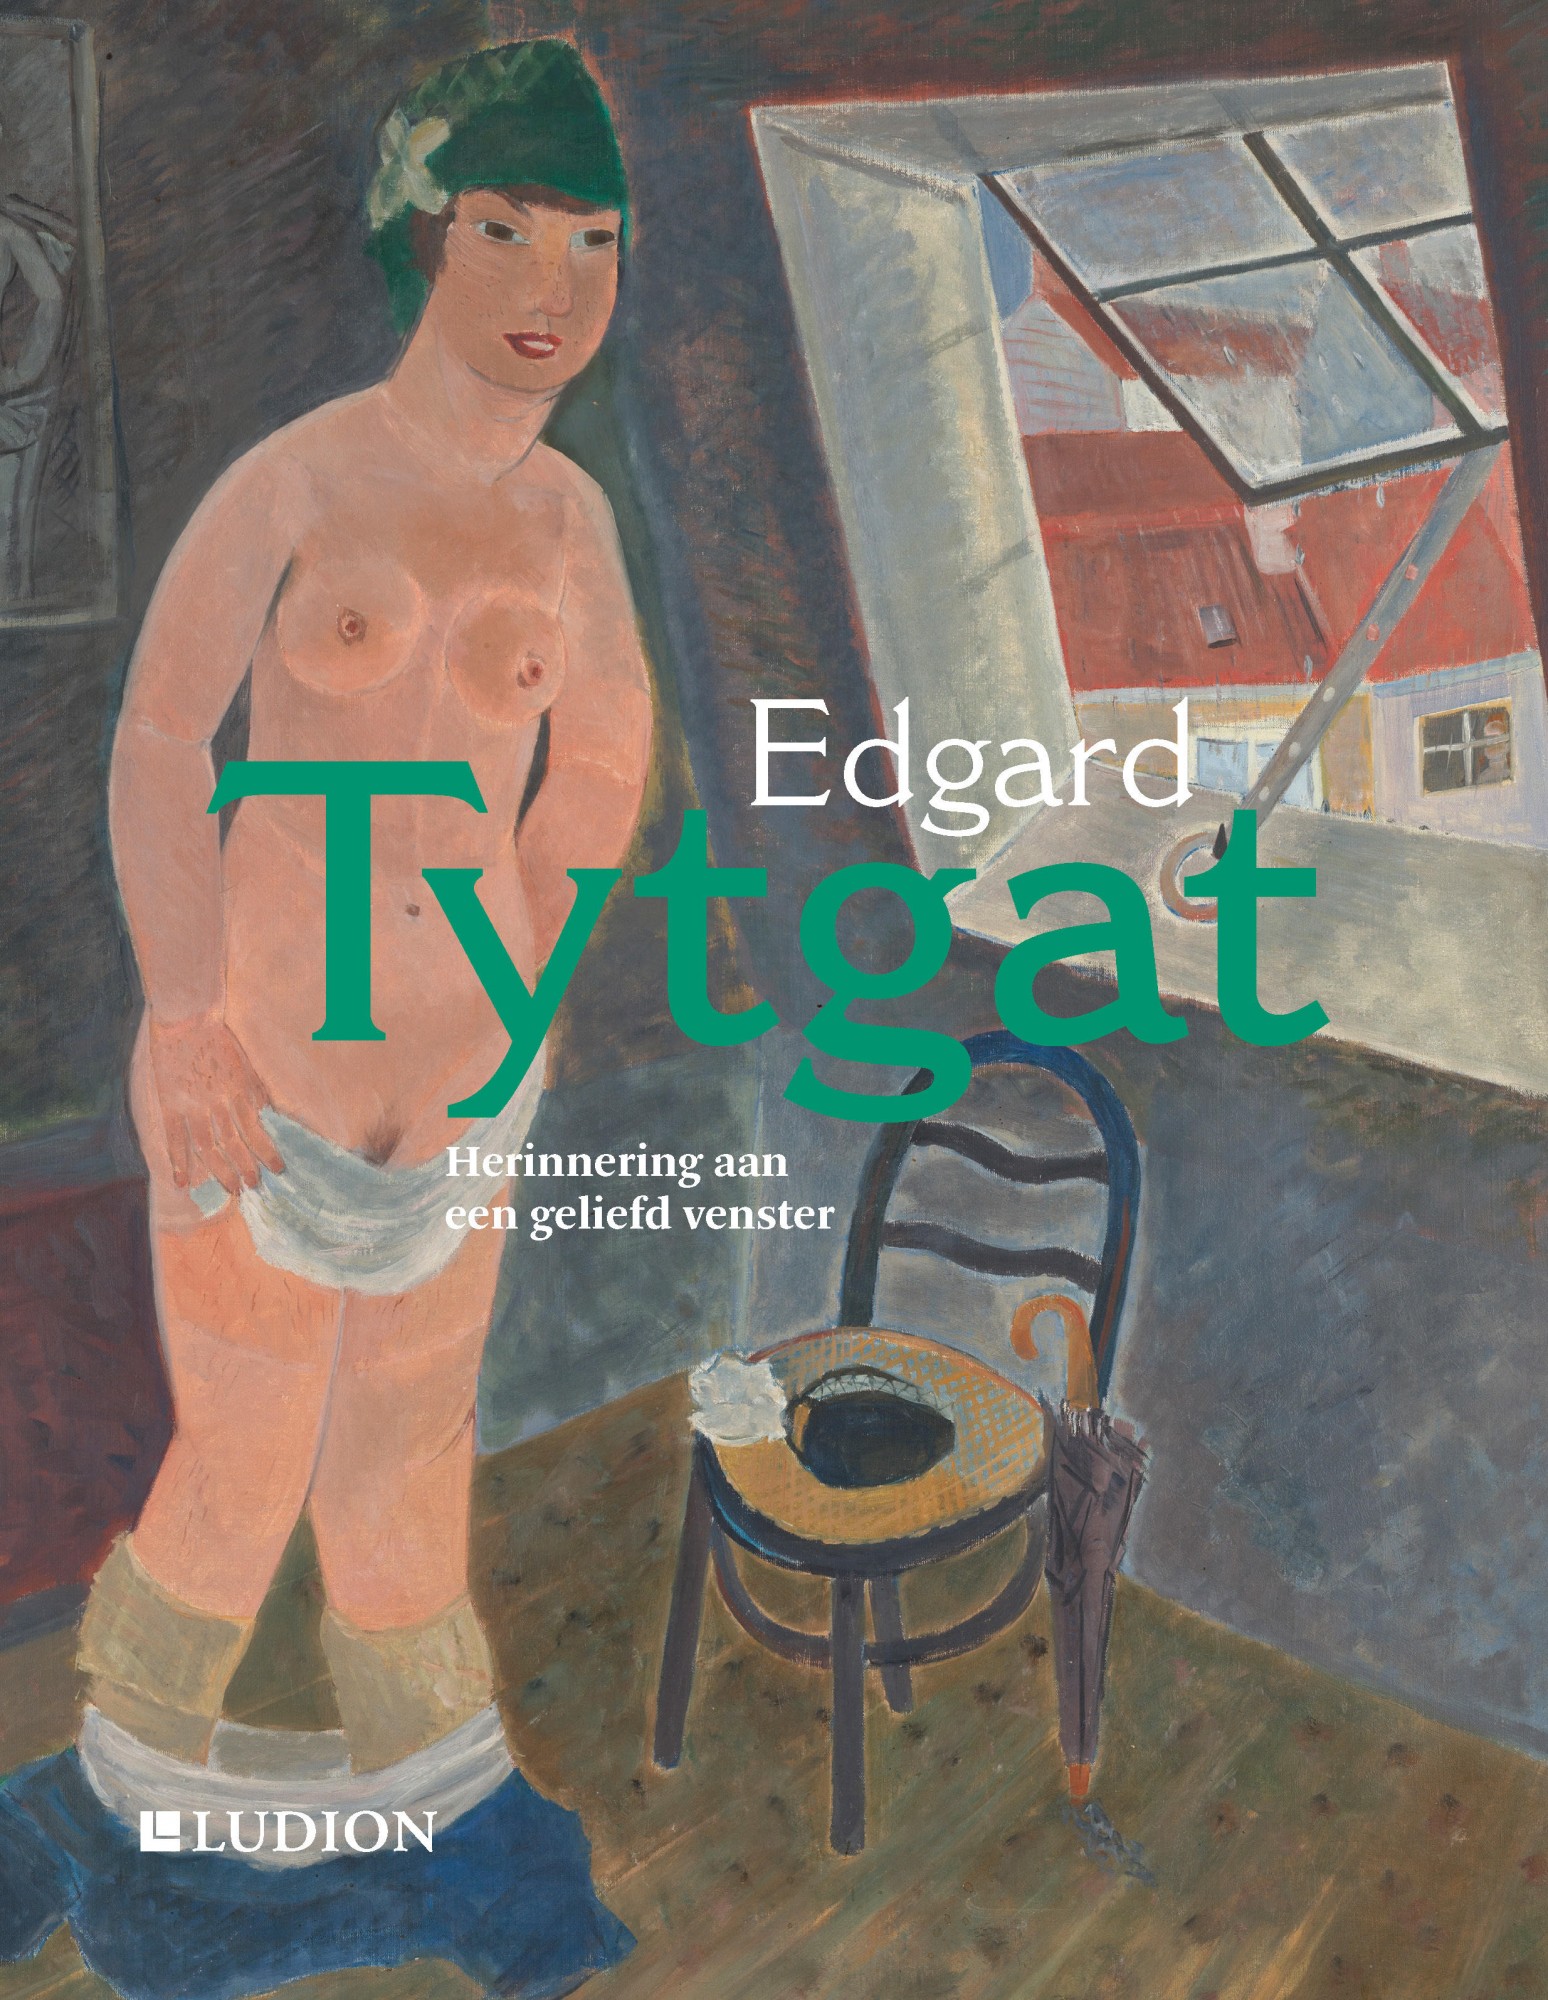 Edgard Tytgat, herinnering aan een geliefd venster